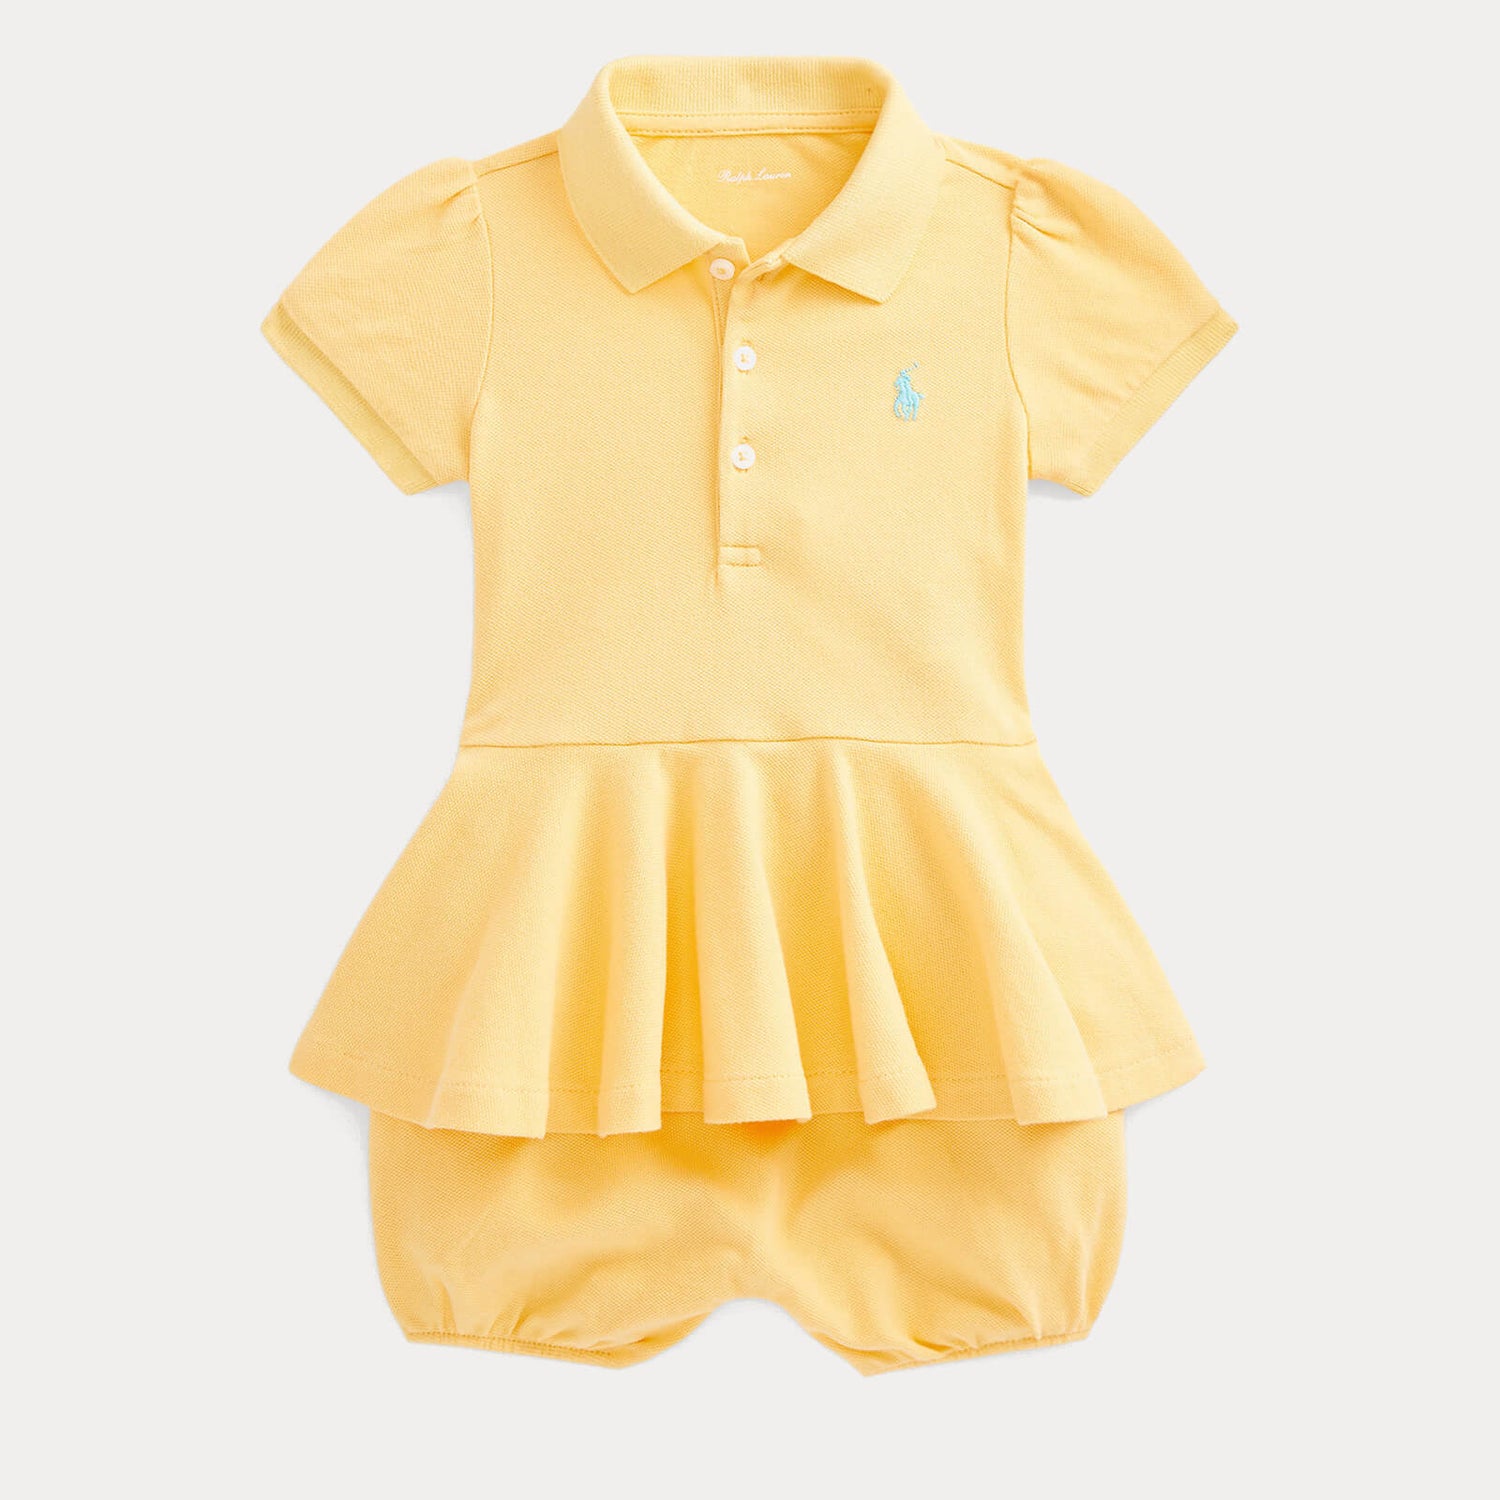 Polo Ralph Lauren Babys' Bubble Dress - Beach Yellow - 3-6 months